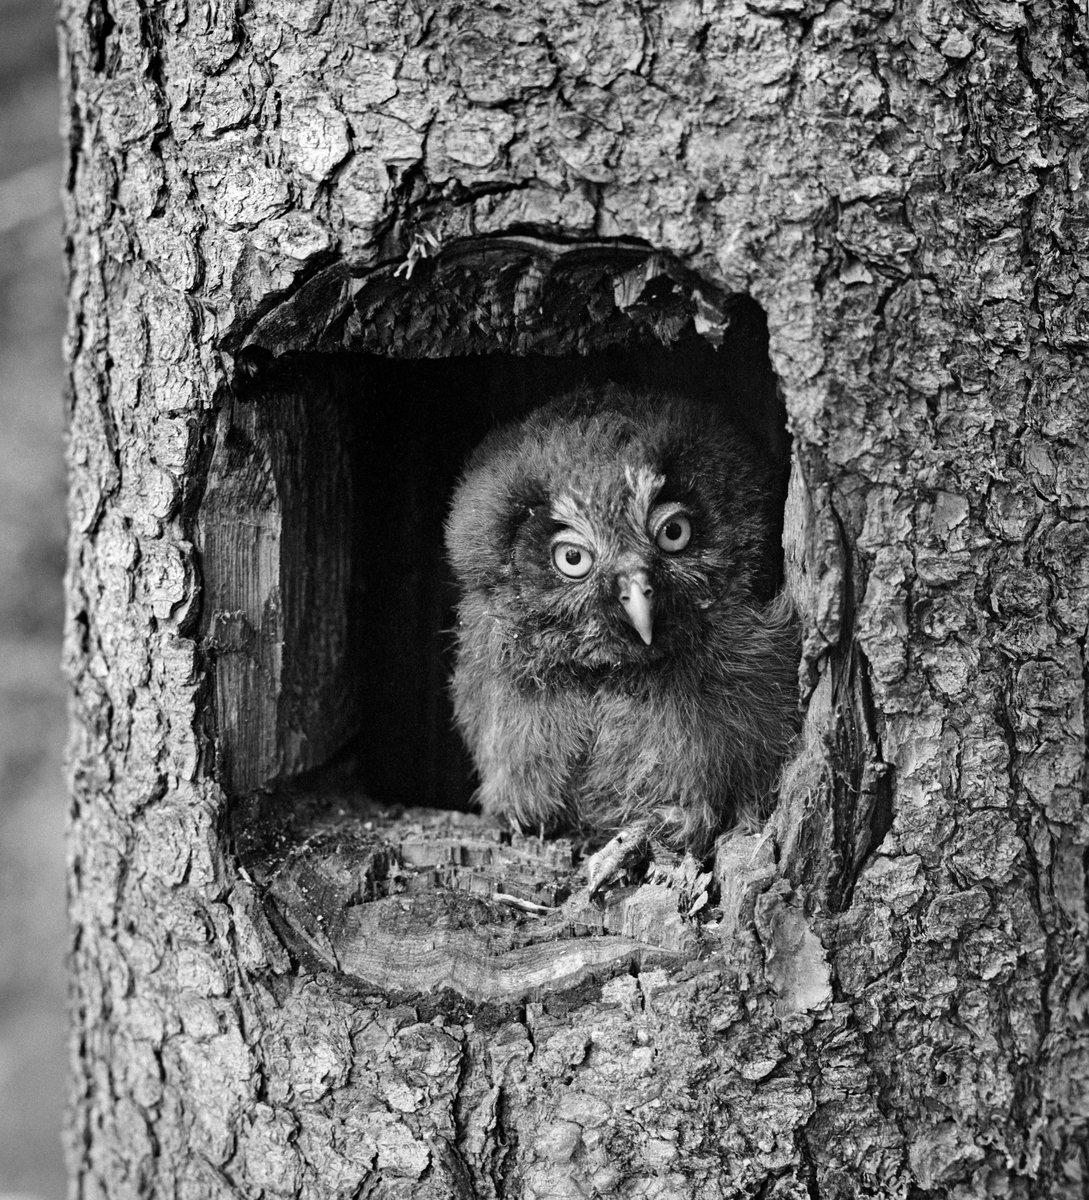 Perleugle (Aegolius funerus), fotografert i et rugehull i ei gran.  Fuglen satt vendt mot fotografen.  Bildet ble tatt i 1967.  Fotografen har ikke notert seg opptaksstedet, men han bodde i Elverum og de fleste av naturbildene er tatt der, i Trysil eller Engerdal.